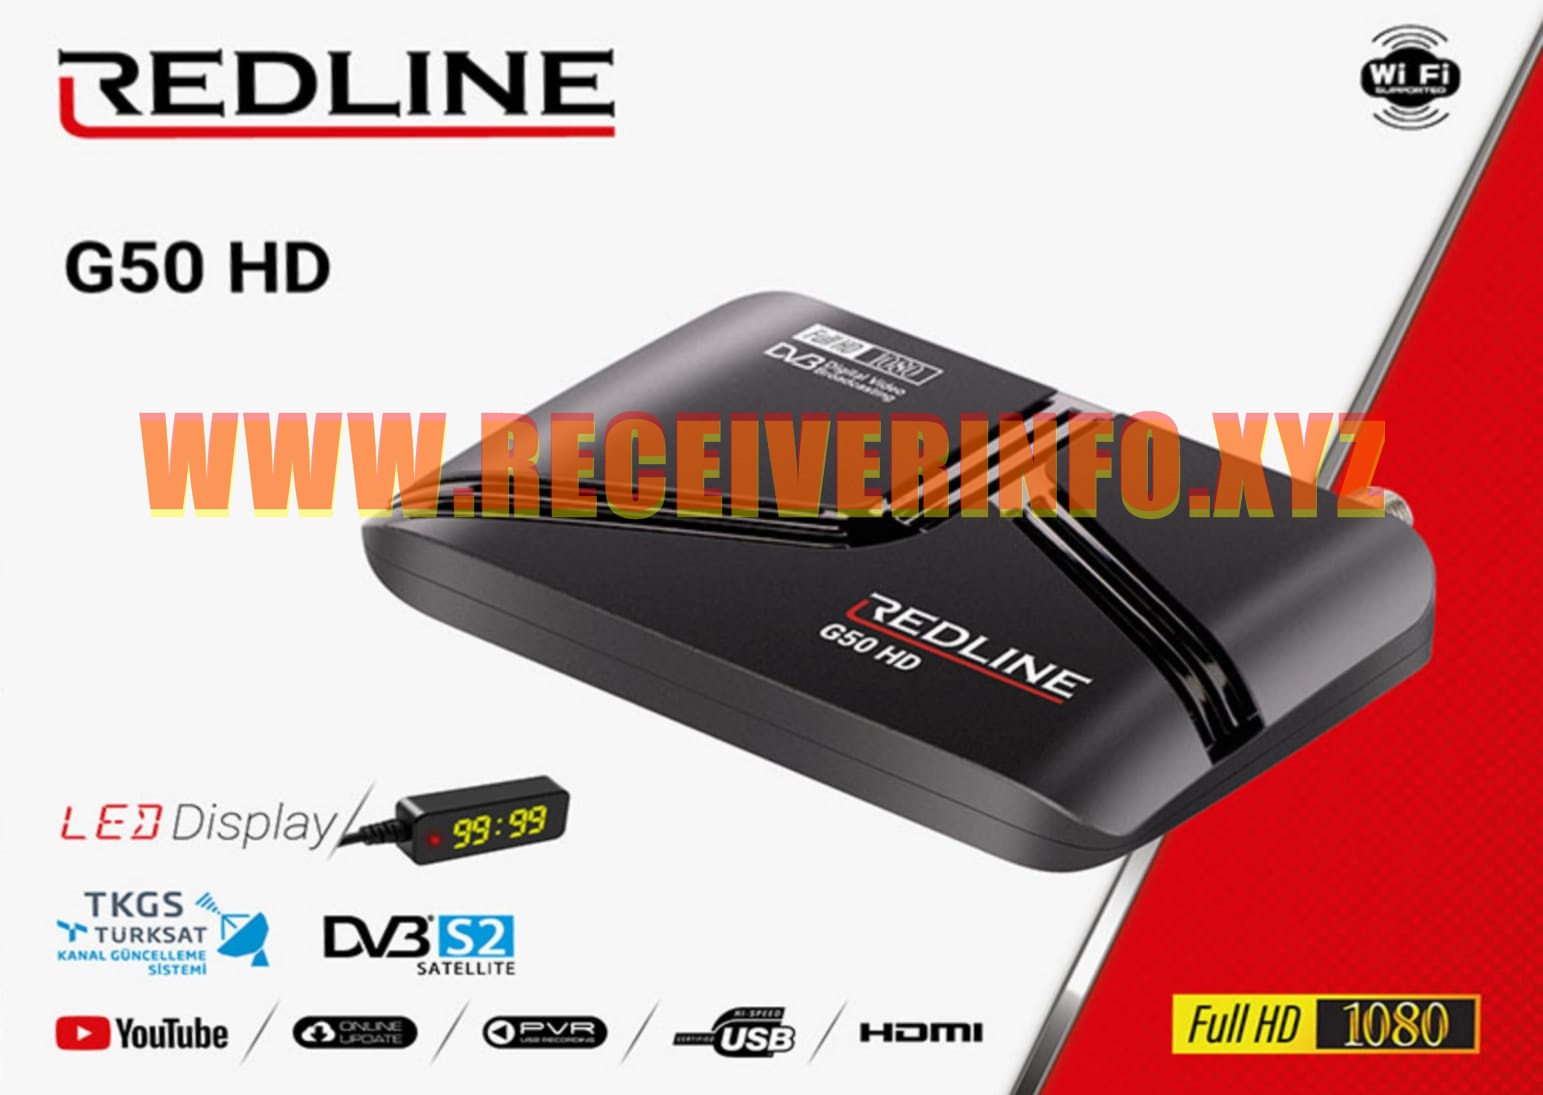 REDLINE G50 HD RECEIVER NEW SOFTWARE UPDATE